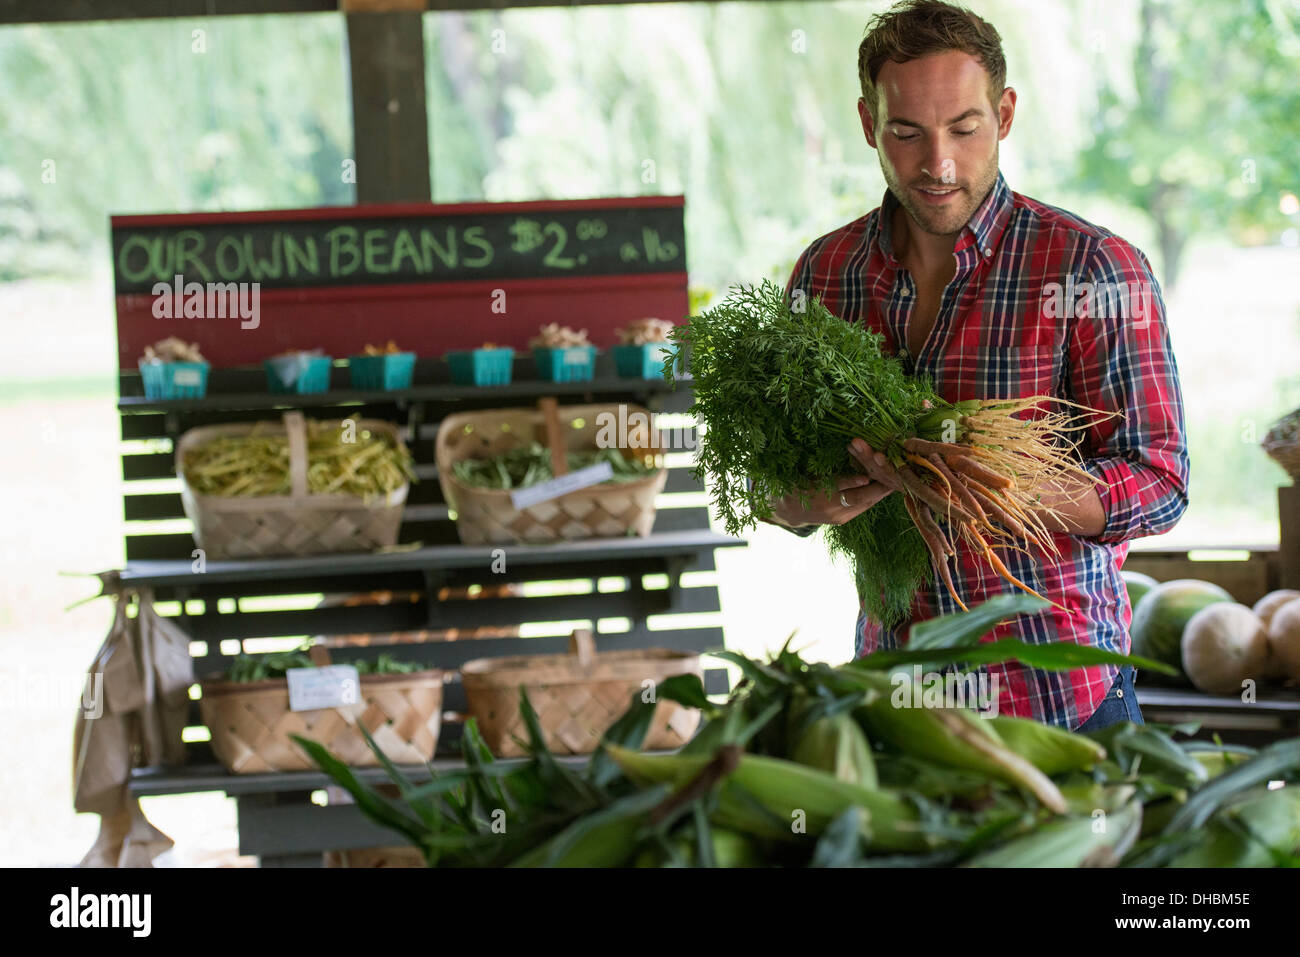 Ein Bauernhof Stand mit frischem Bio-Gemüse und Obst.  Ein Mann hält Bund Karotten. Stockfoto